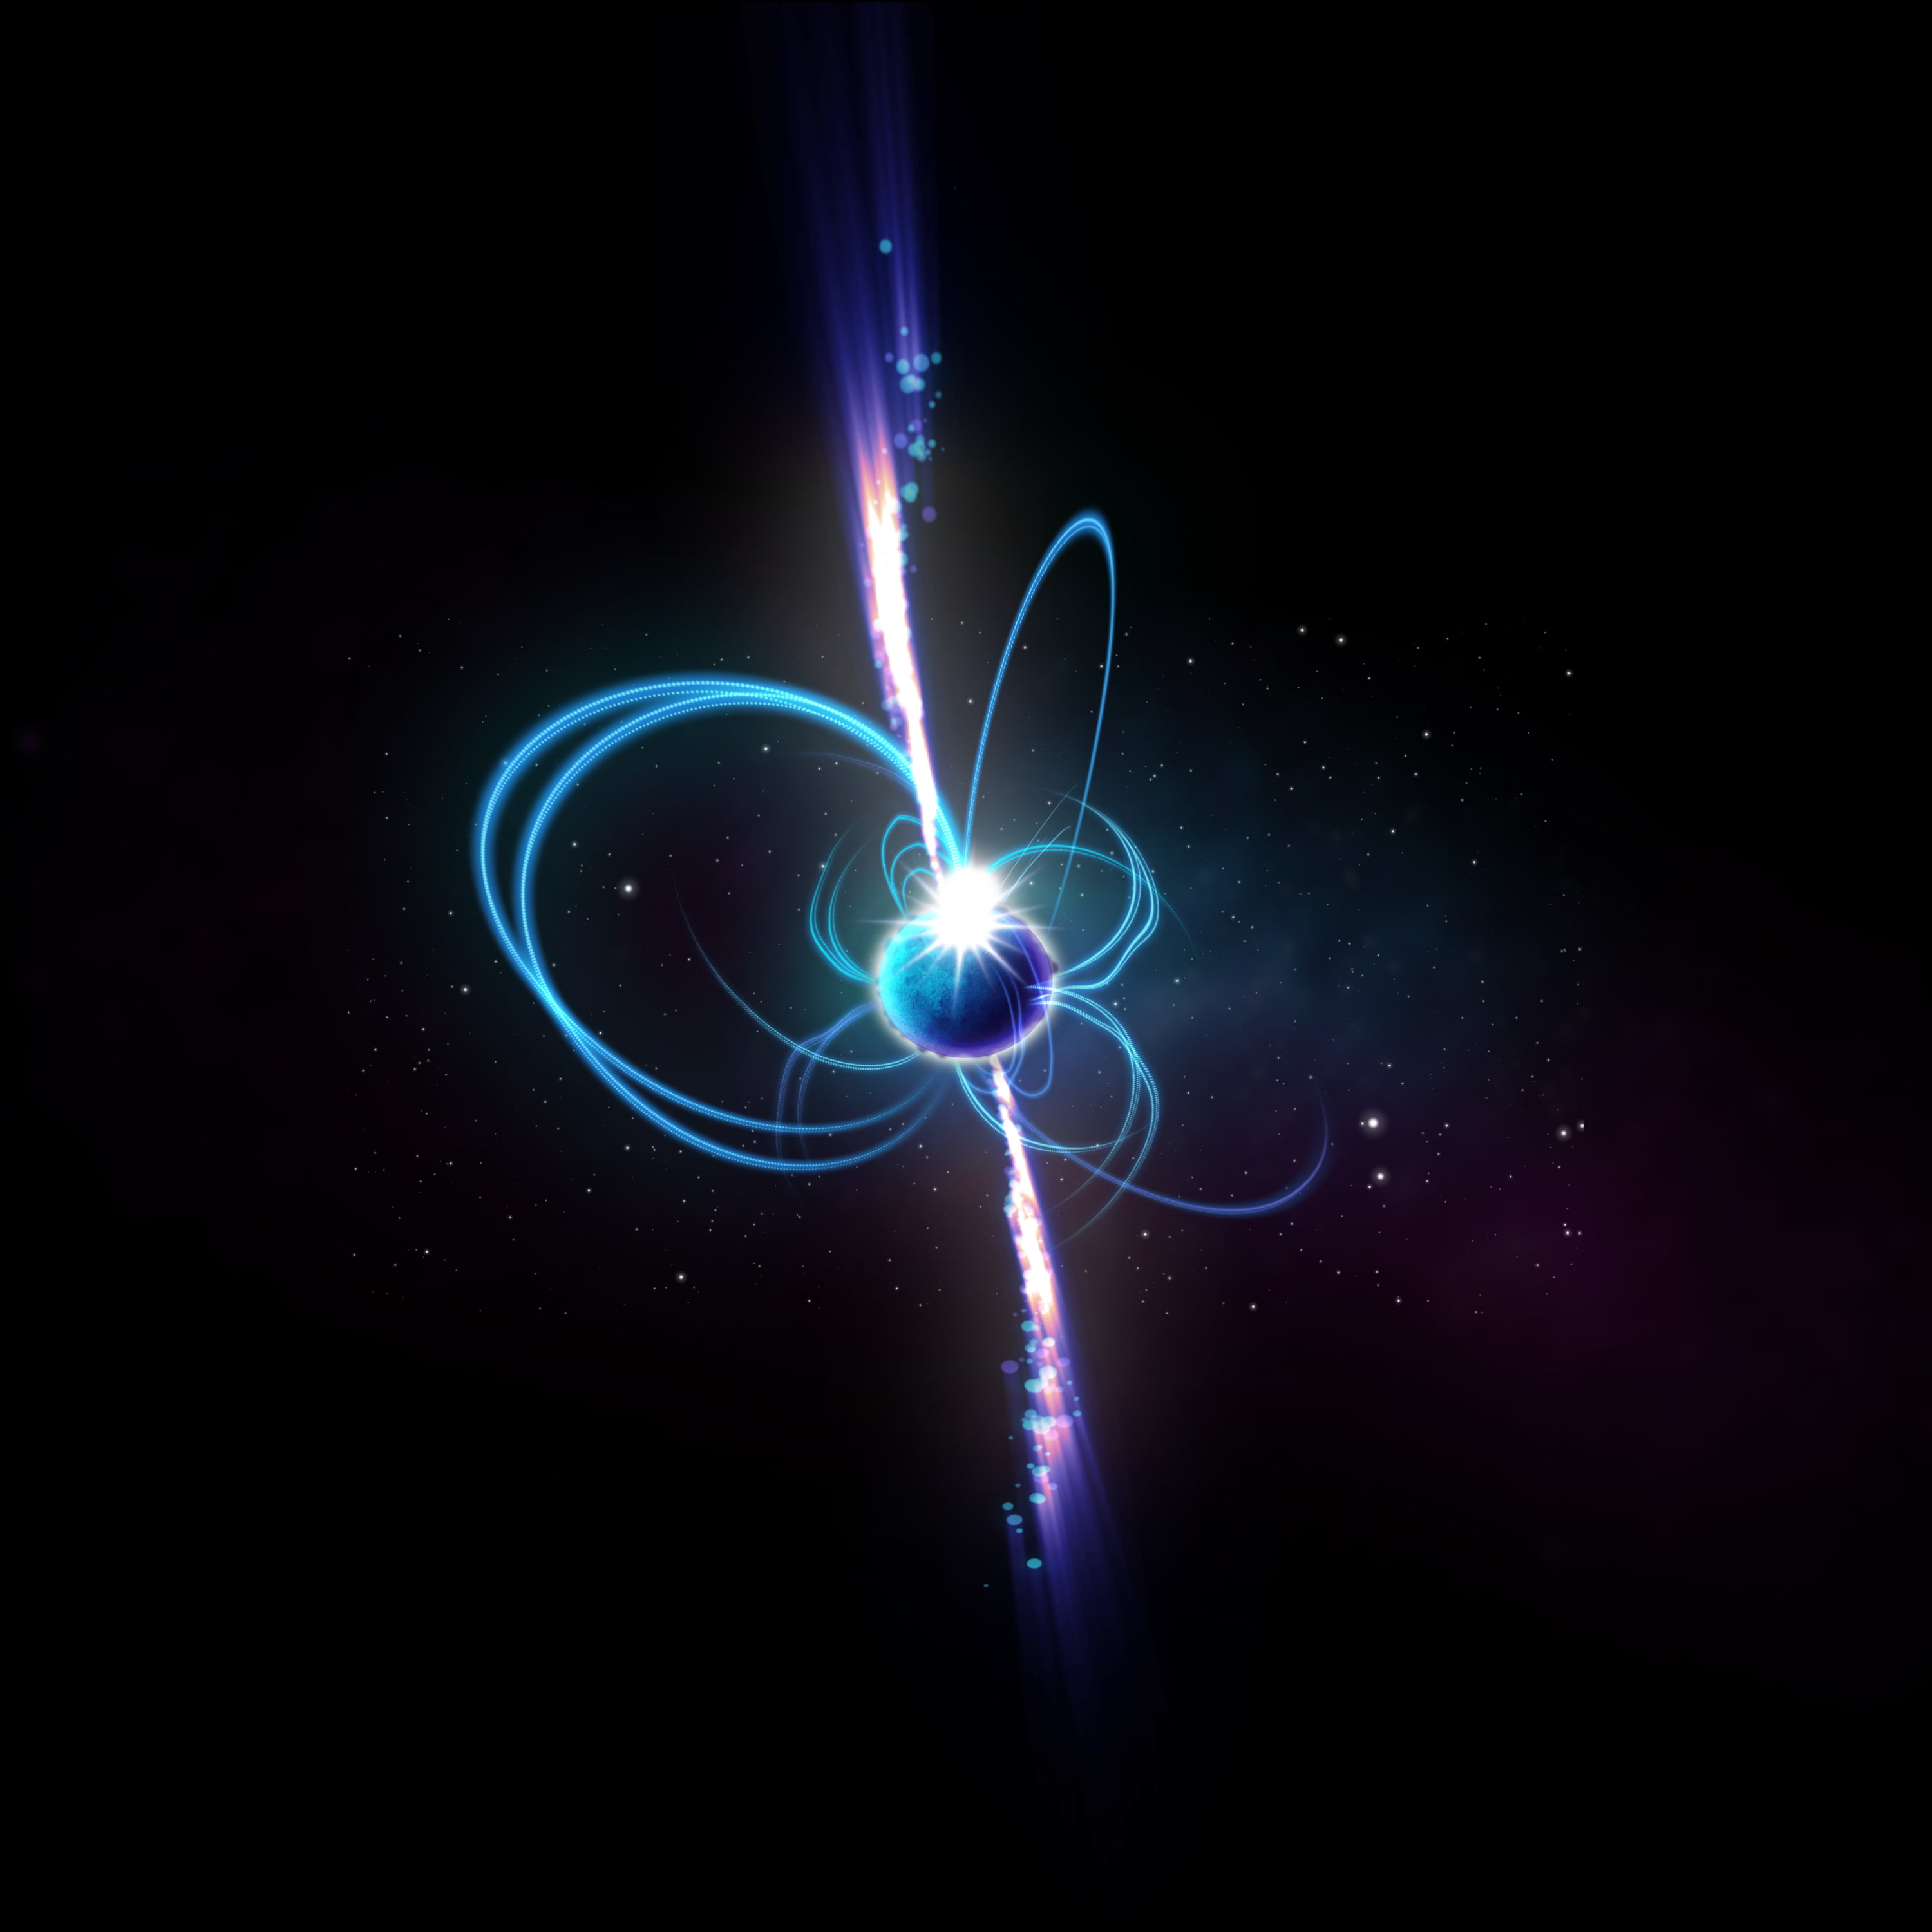 segnali radio sorgente celeste Rappresentazione artistica di una magnetar, potrebbe rappresentare la sorgente celeste rilevata, che emette onde radio. Credit: ICRAR.